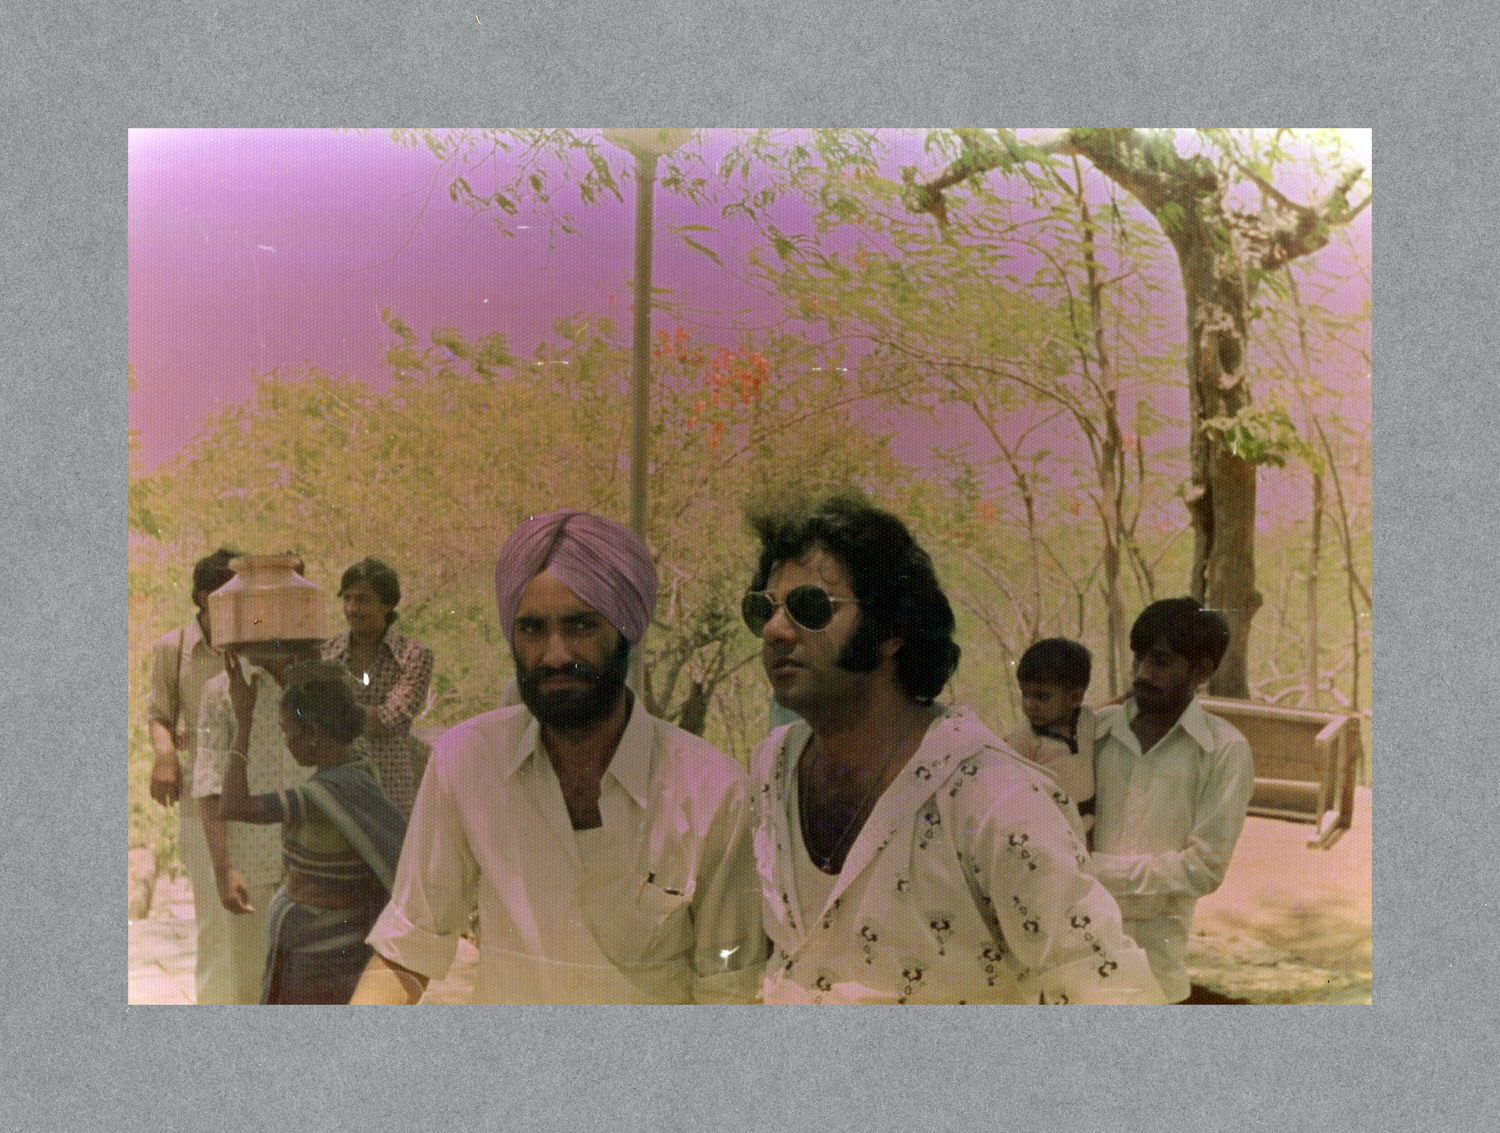 Mumbia, India c.1975